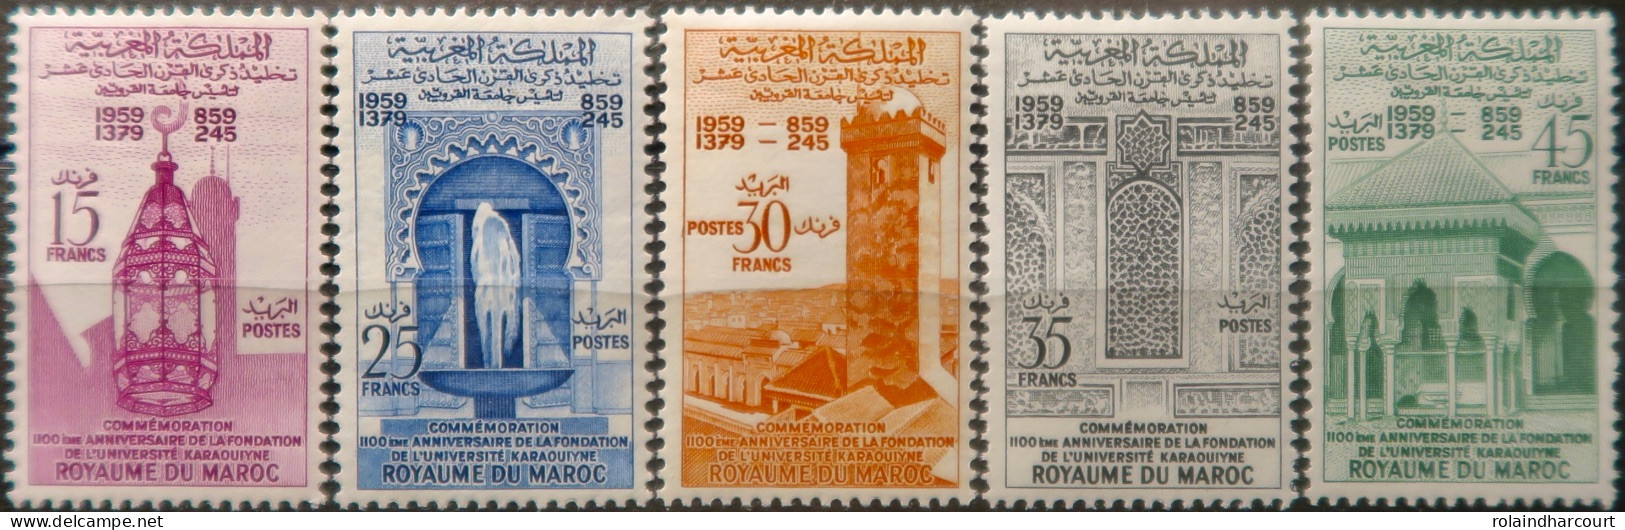 LP3844/2238 - MAROC - 1960 - SERIE COMPLETE - N°405 à 409 NEUFS* - Maroc (1956-...)